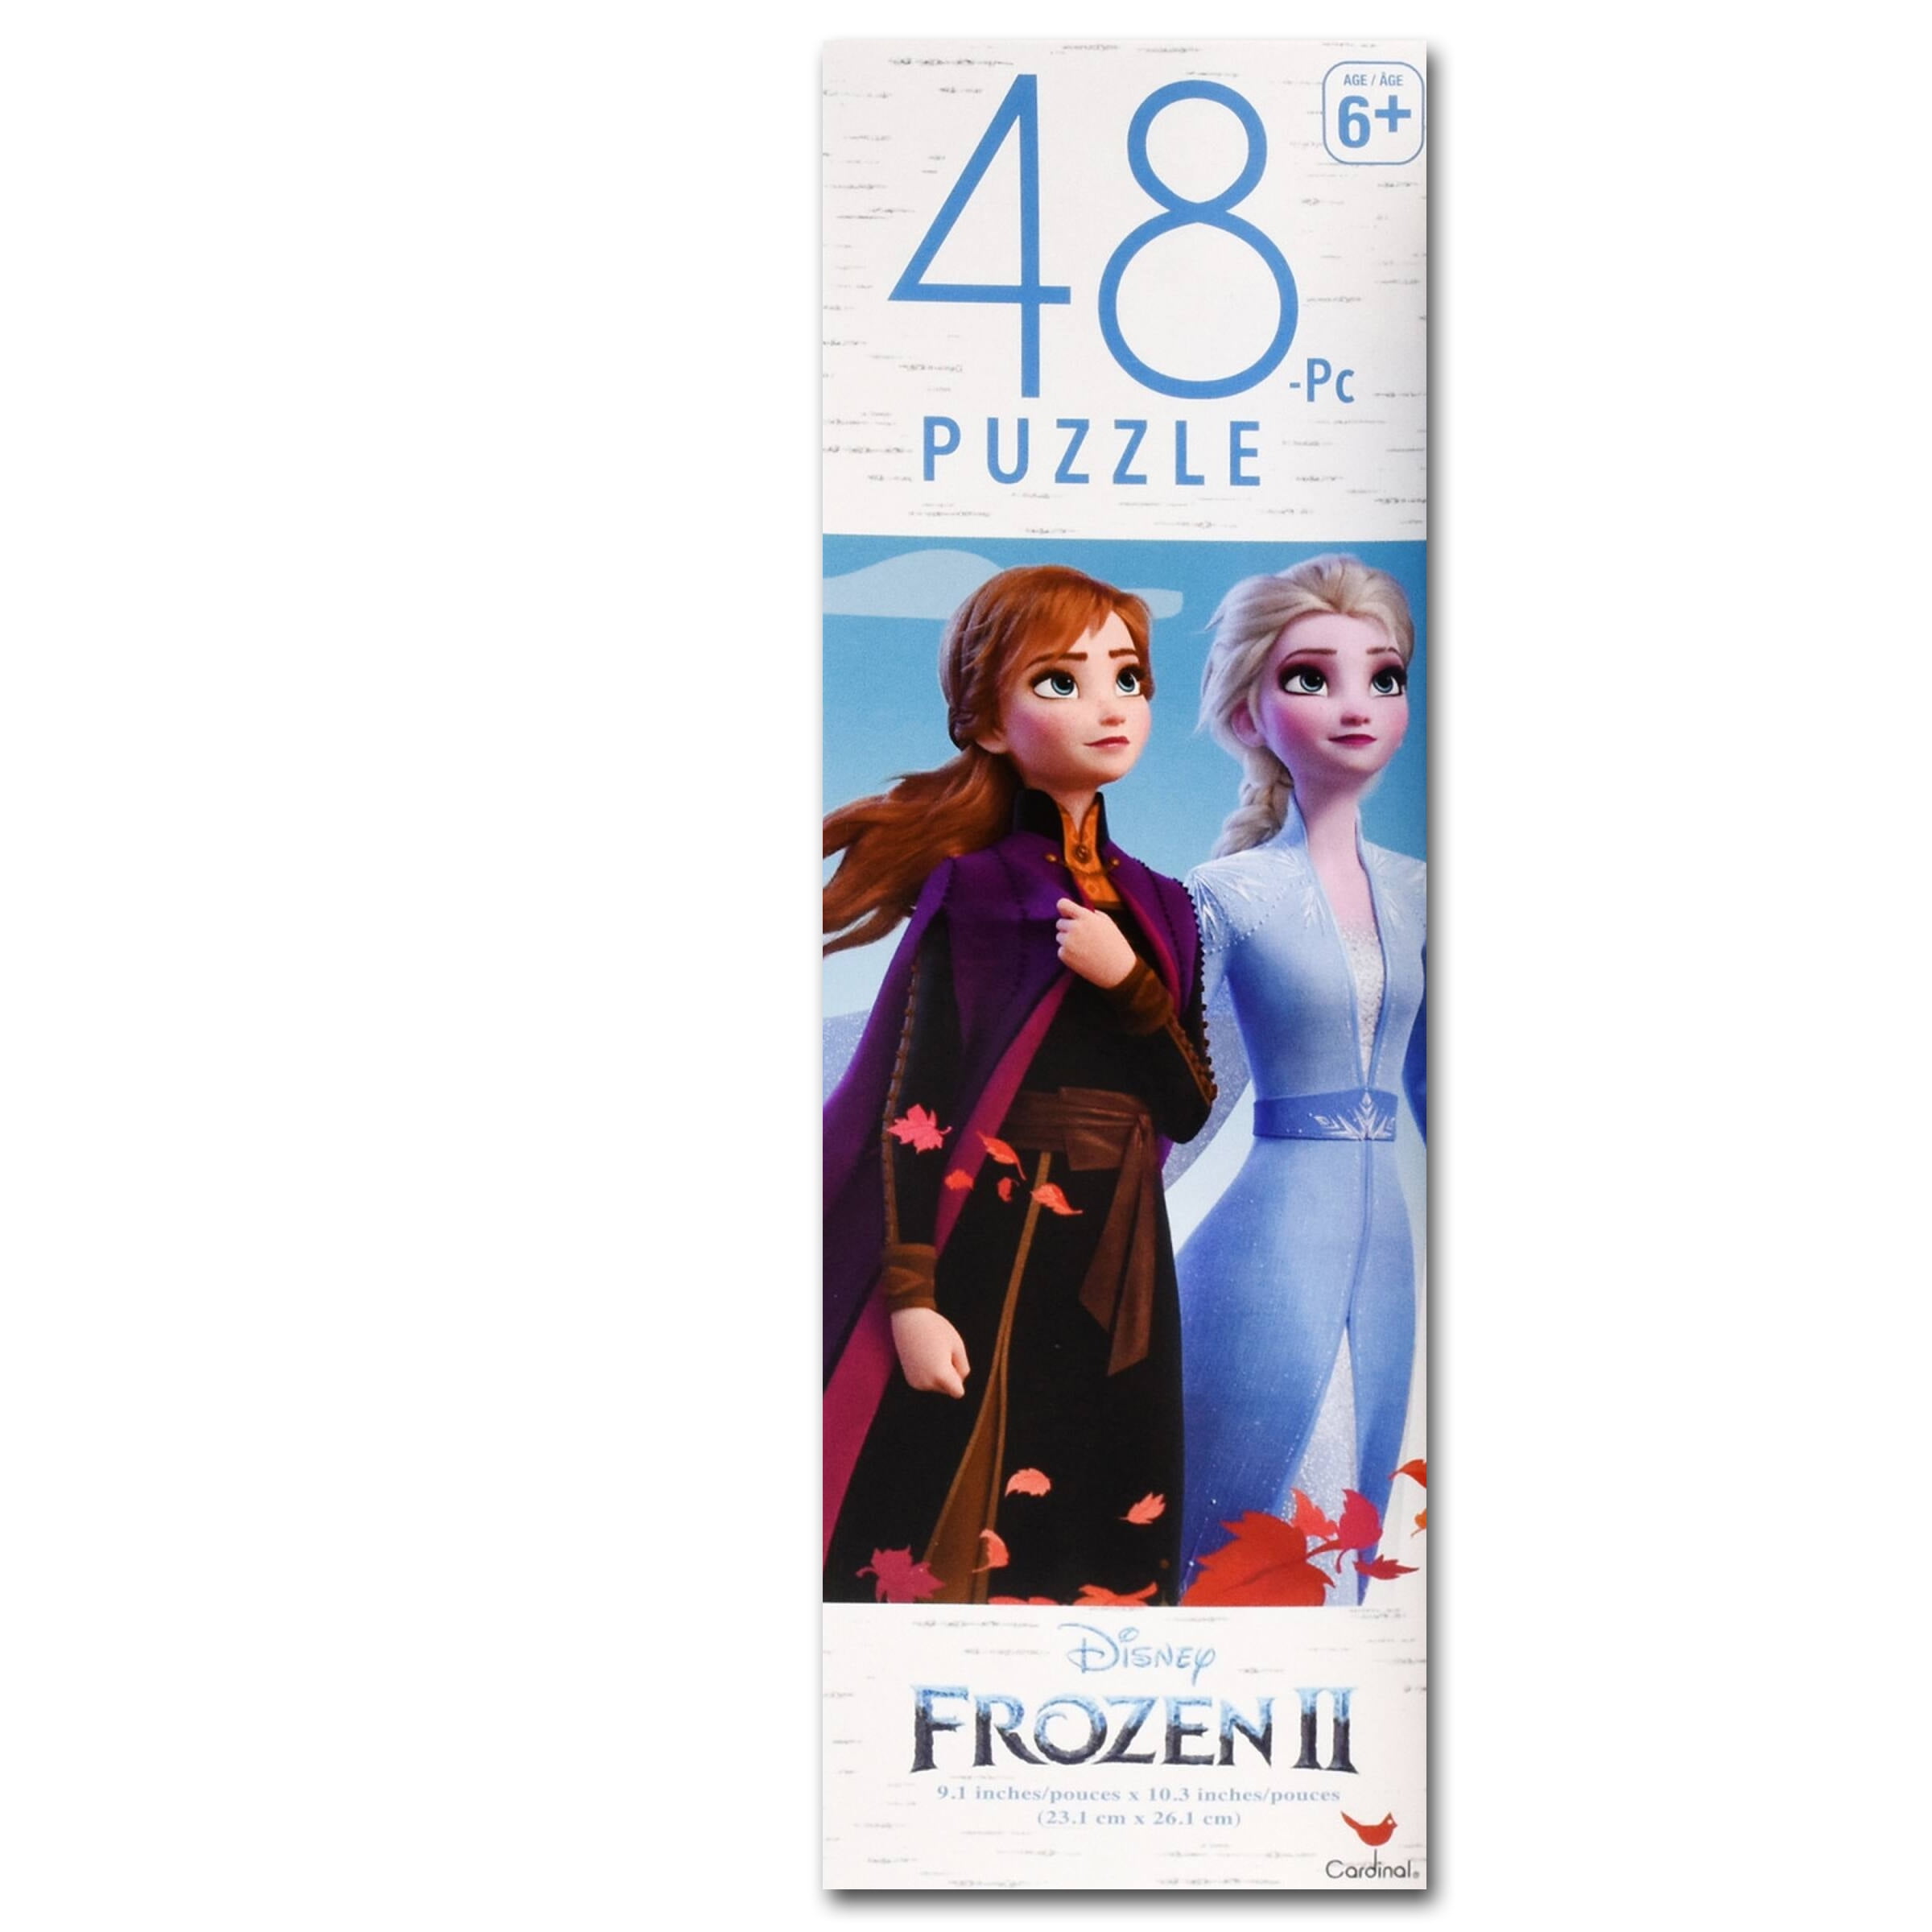 Frozen 2 Disney Jigsaw Puzzle 48 piece 9.1" x 10.3” Anna & Olaf Puzzles New 